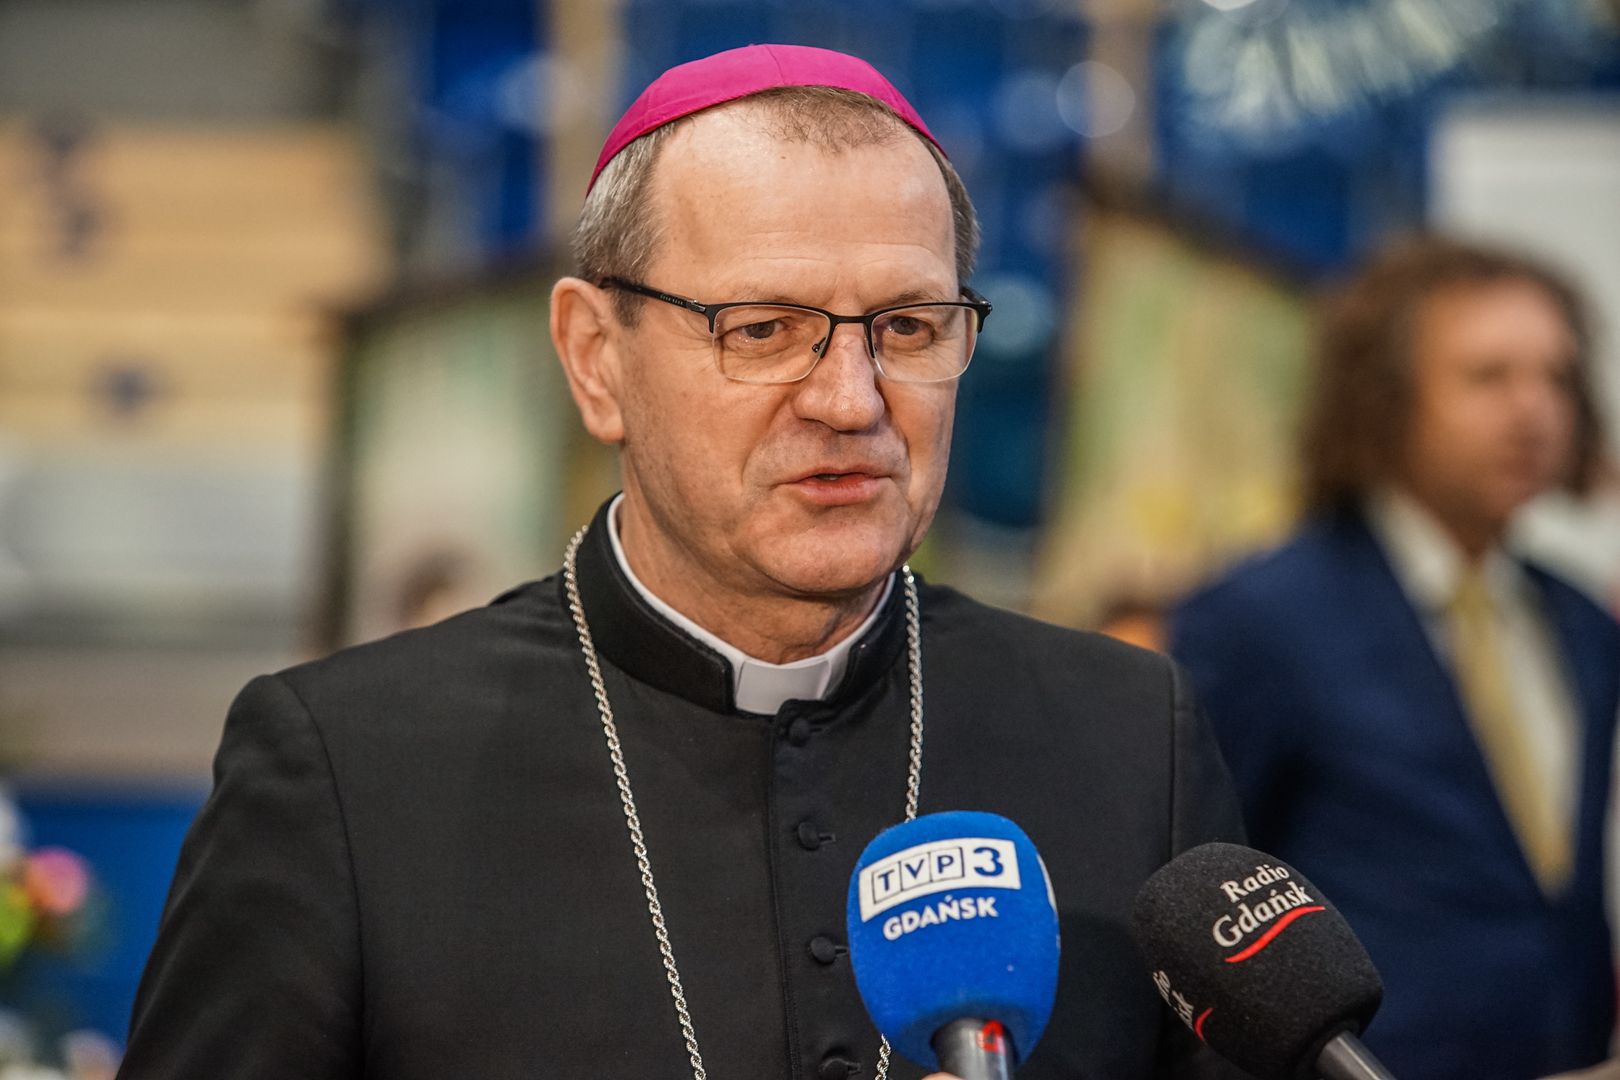 Wybór dokonany. Oto nowy przewodniczący Konferencji Episkopatu Polski